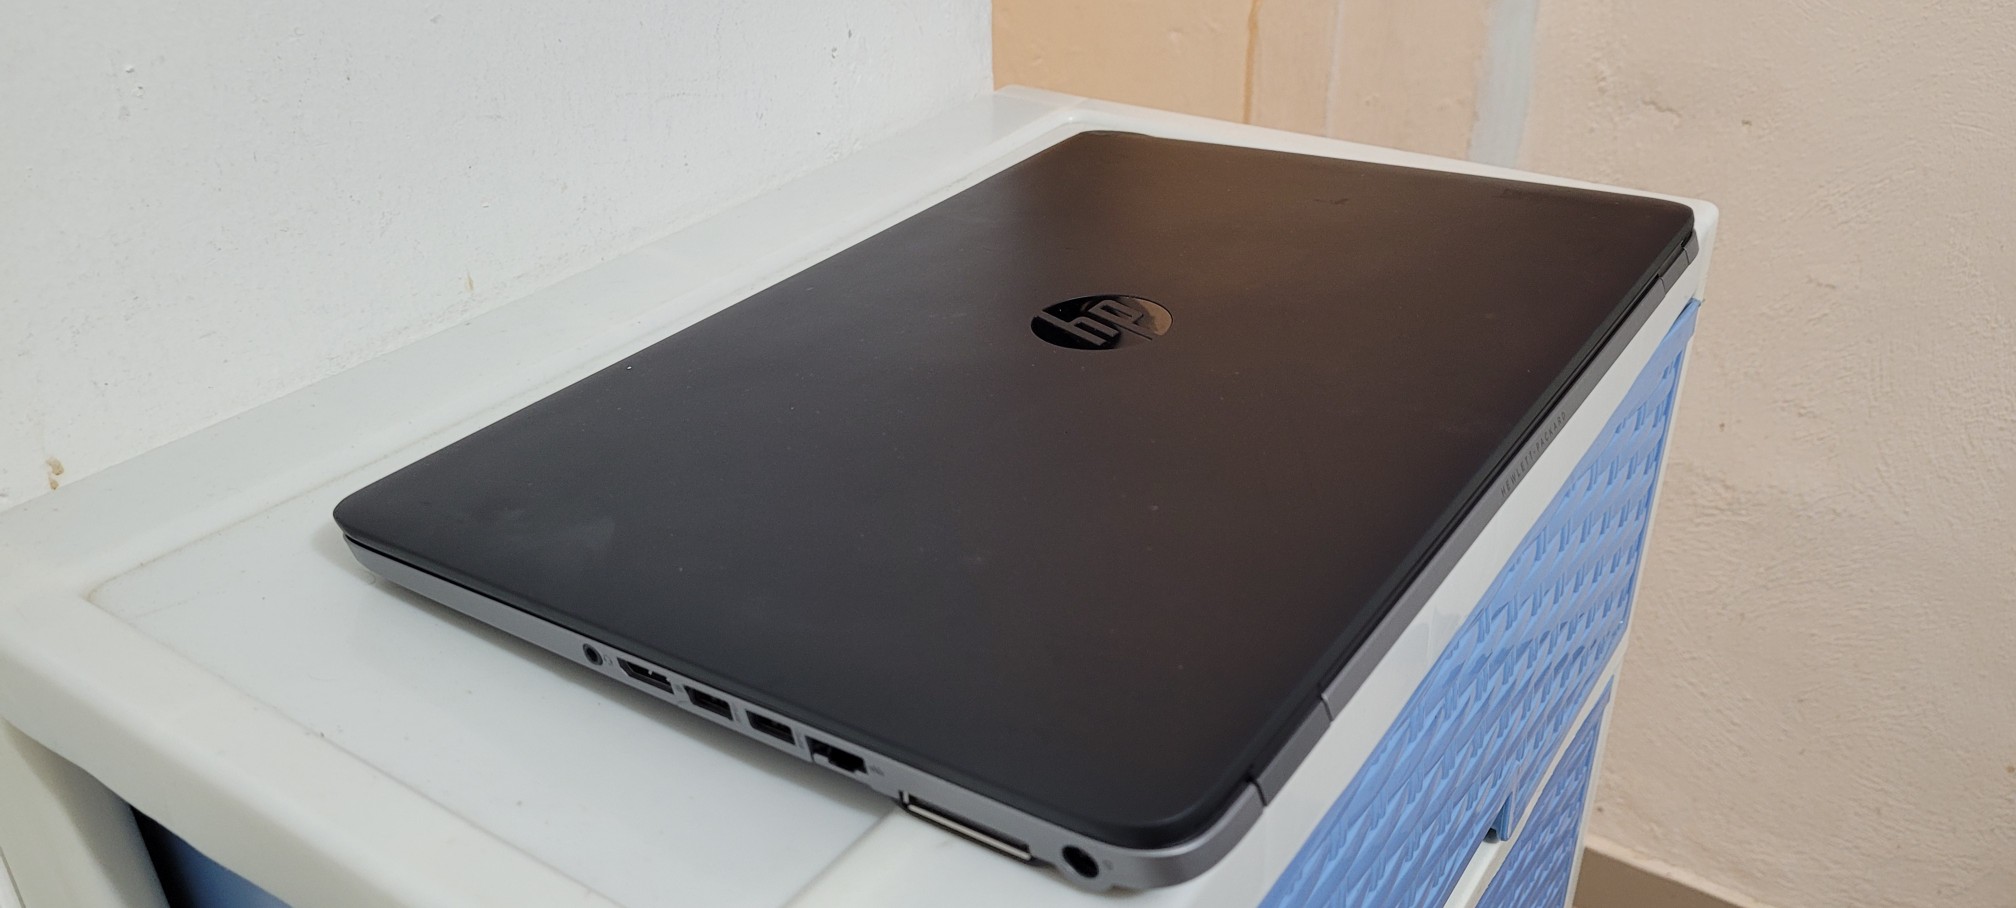 computadoras y laptops - Laptop hp Slim 17 Pulg Core i5 Ram 16gb Disco 256gb SSD Solido 2